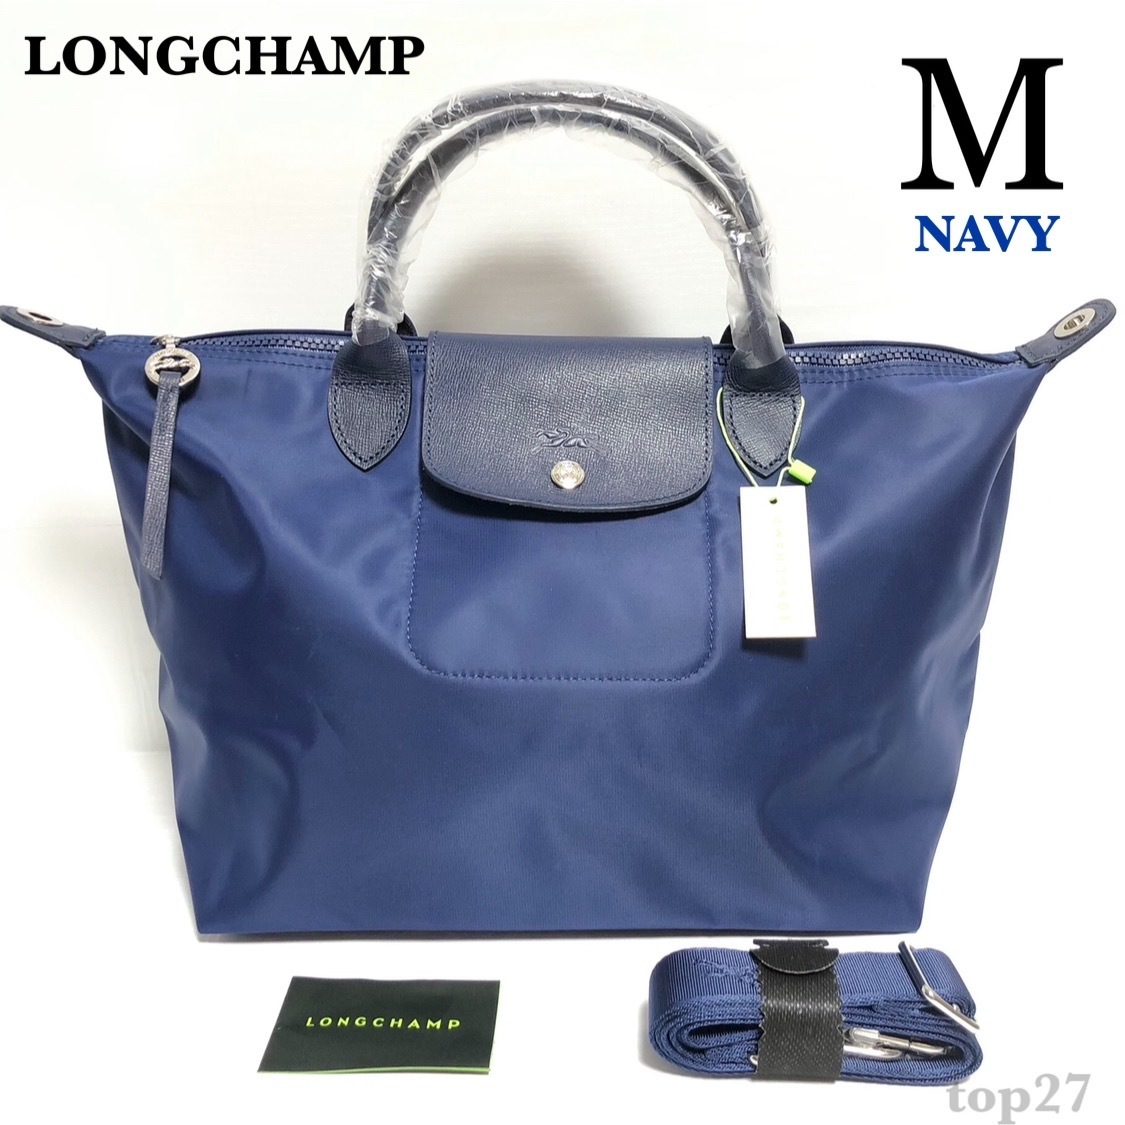  Long Champ /LONGCHAMPru*p задний -ju Neo /NEO большая сумка M темно-синий / темно-синий верх руль сумка сумка на плечо женский женщина 